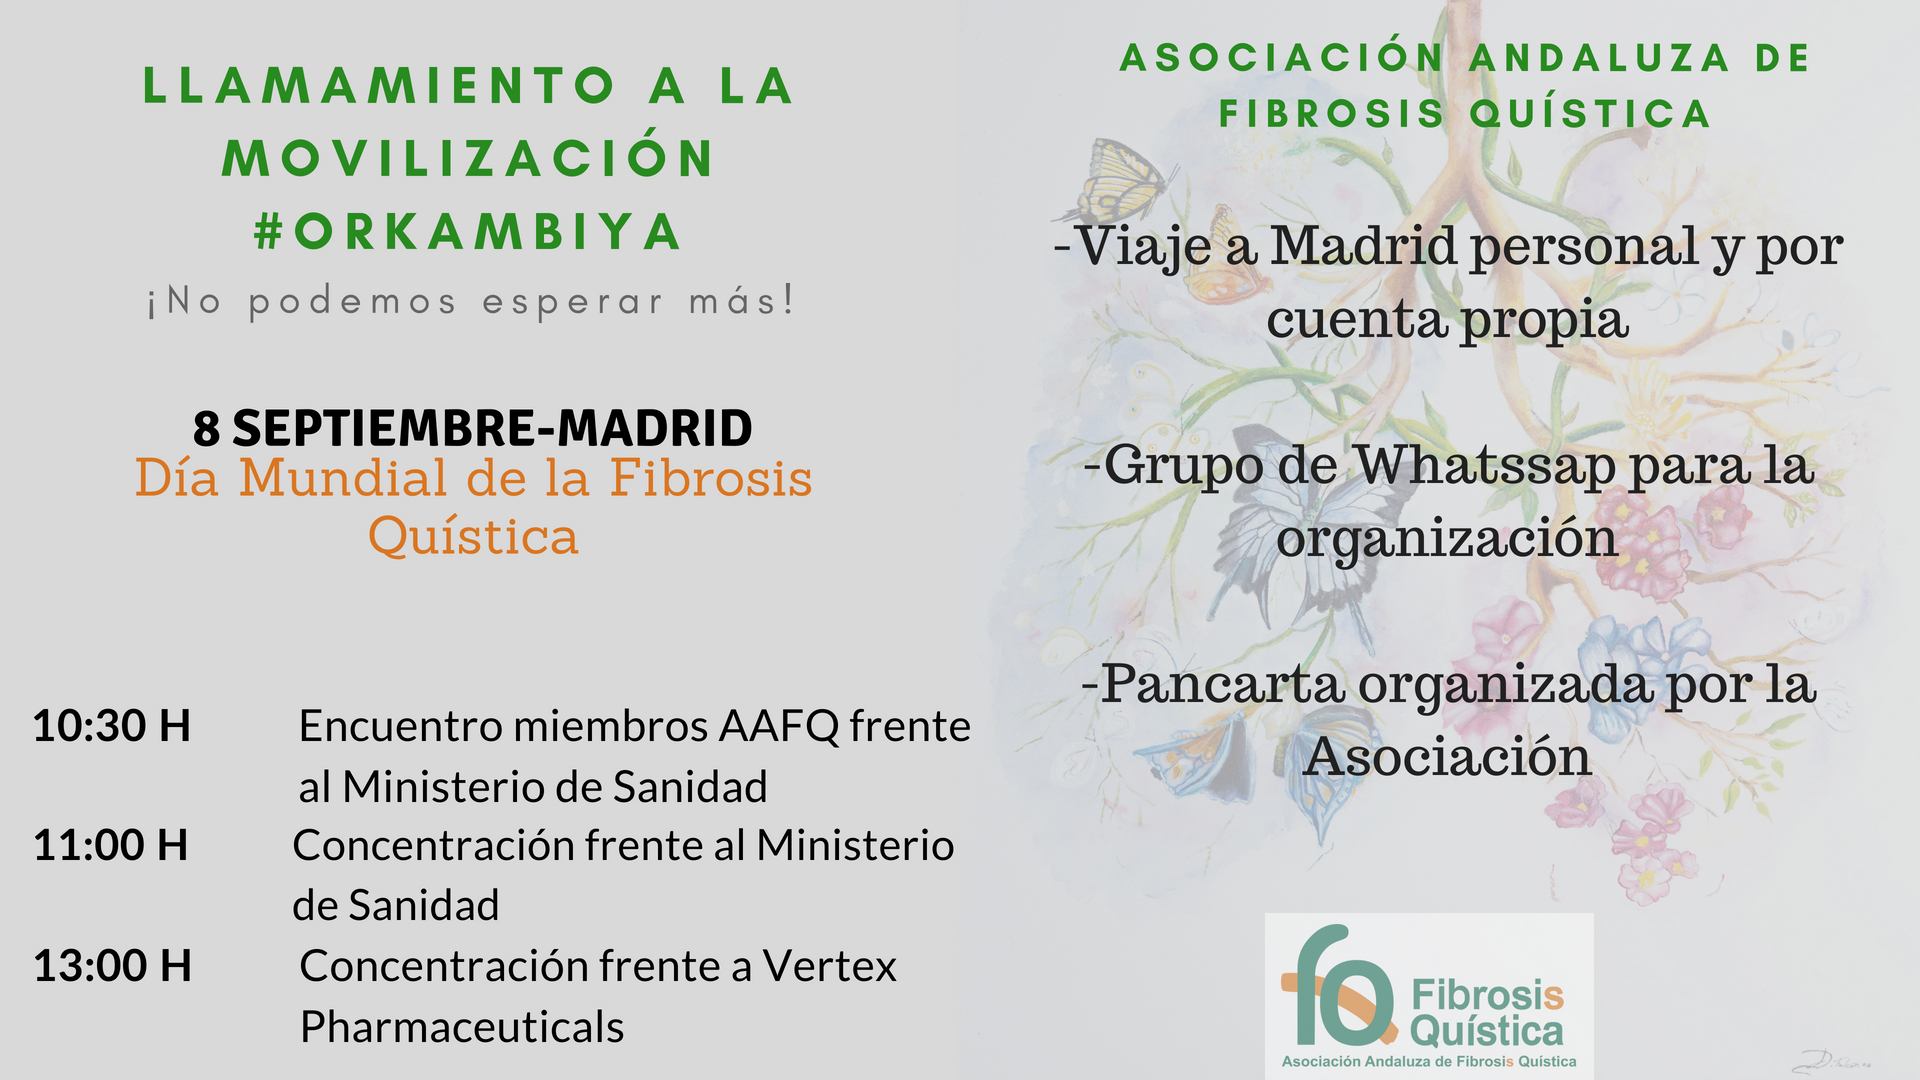 DÍA MUNDIAL DE LA FIBROSIS QUÍSTICA Y CONCENTRACIÓN EN MADRID POR LOS NUEVOS MEDICAMENTOS. 8 DE SEPTIEMBRE